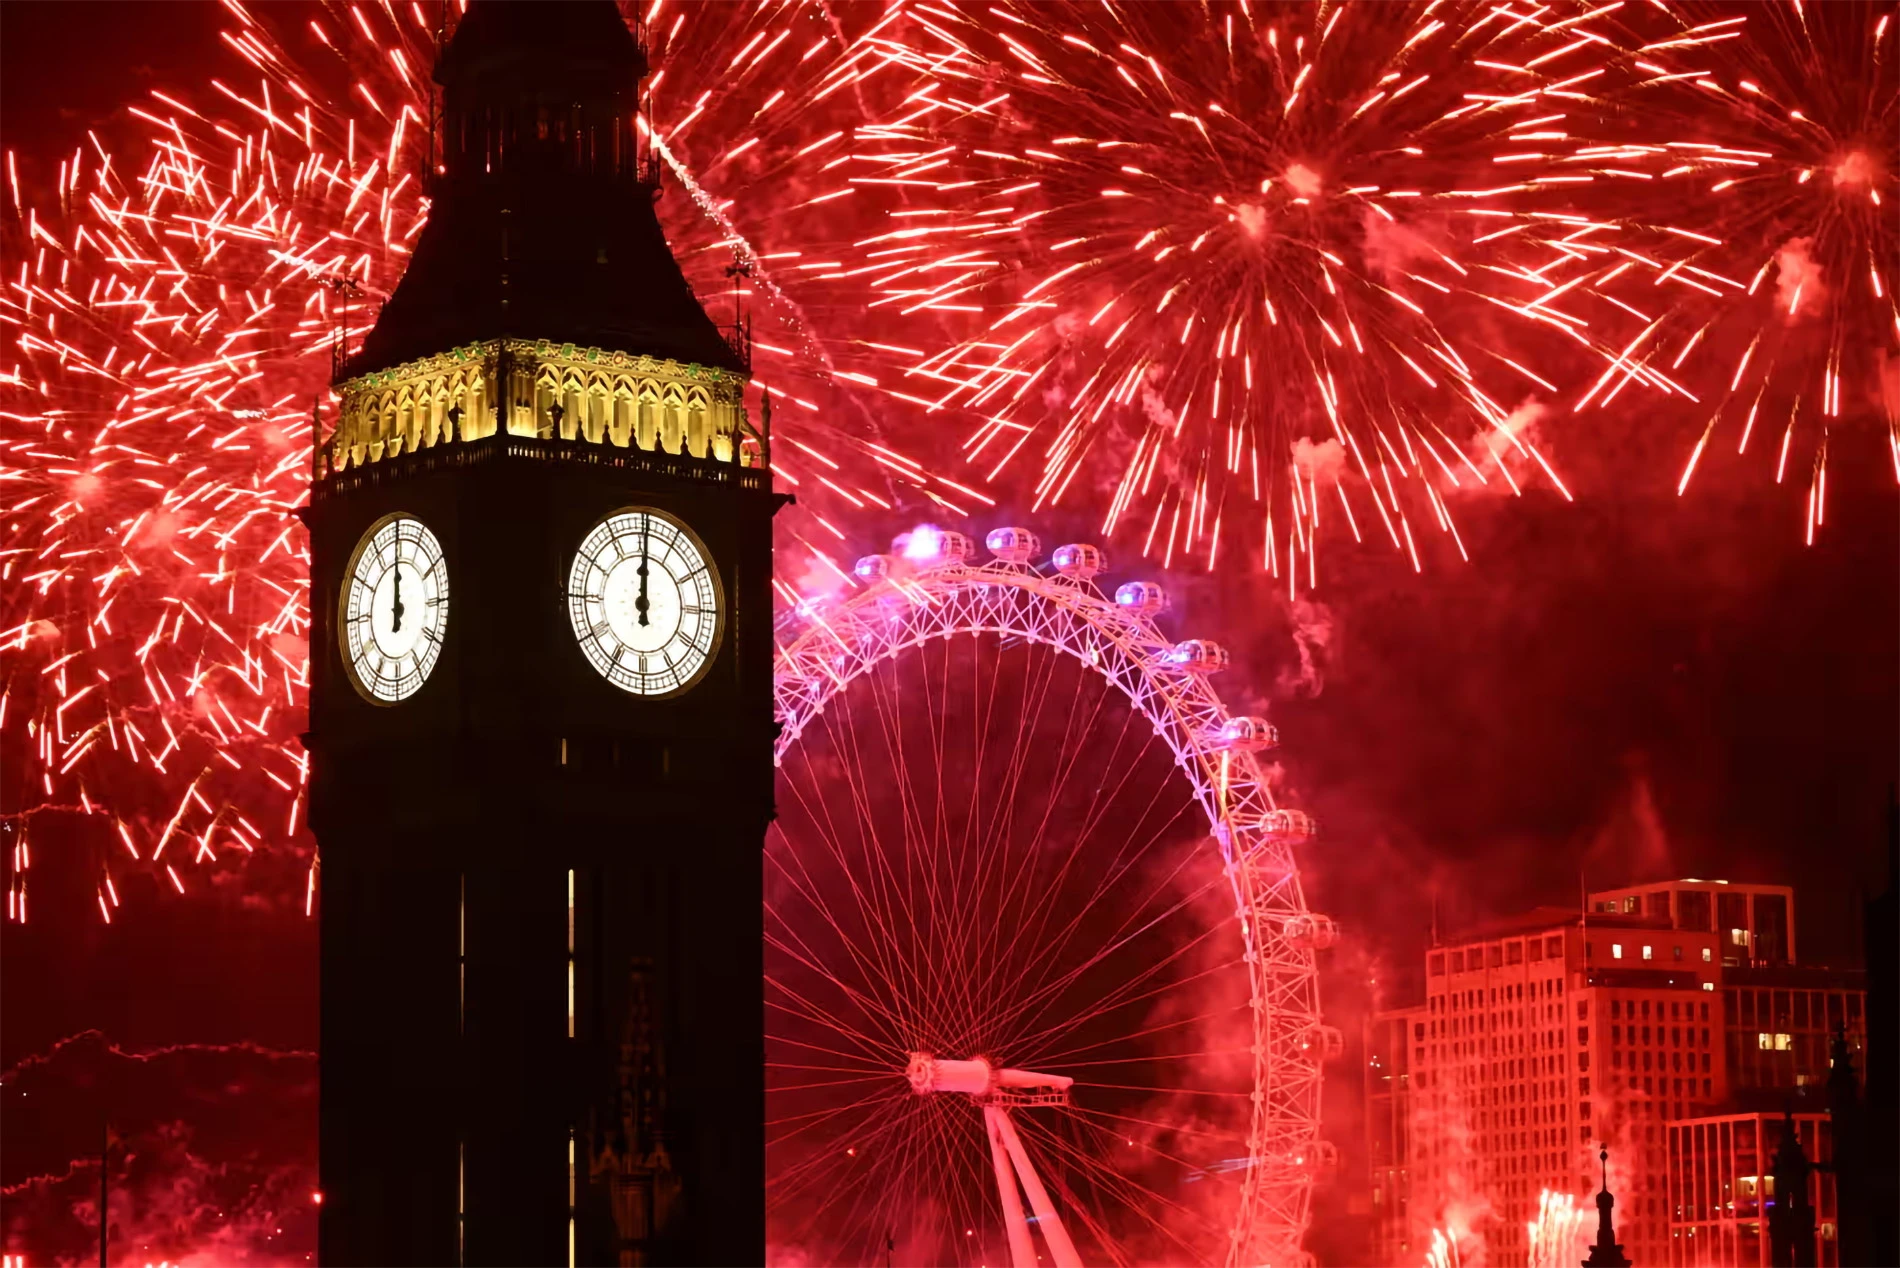 Khi đồng hồ Big Ben điểm 0 giờ, bầu trời London bỗng ngập tràn trong ánh sáng. Ảnh: Getty Images

